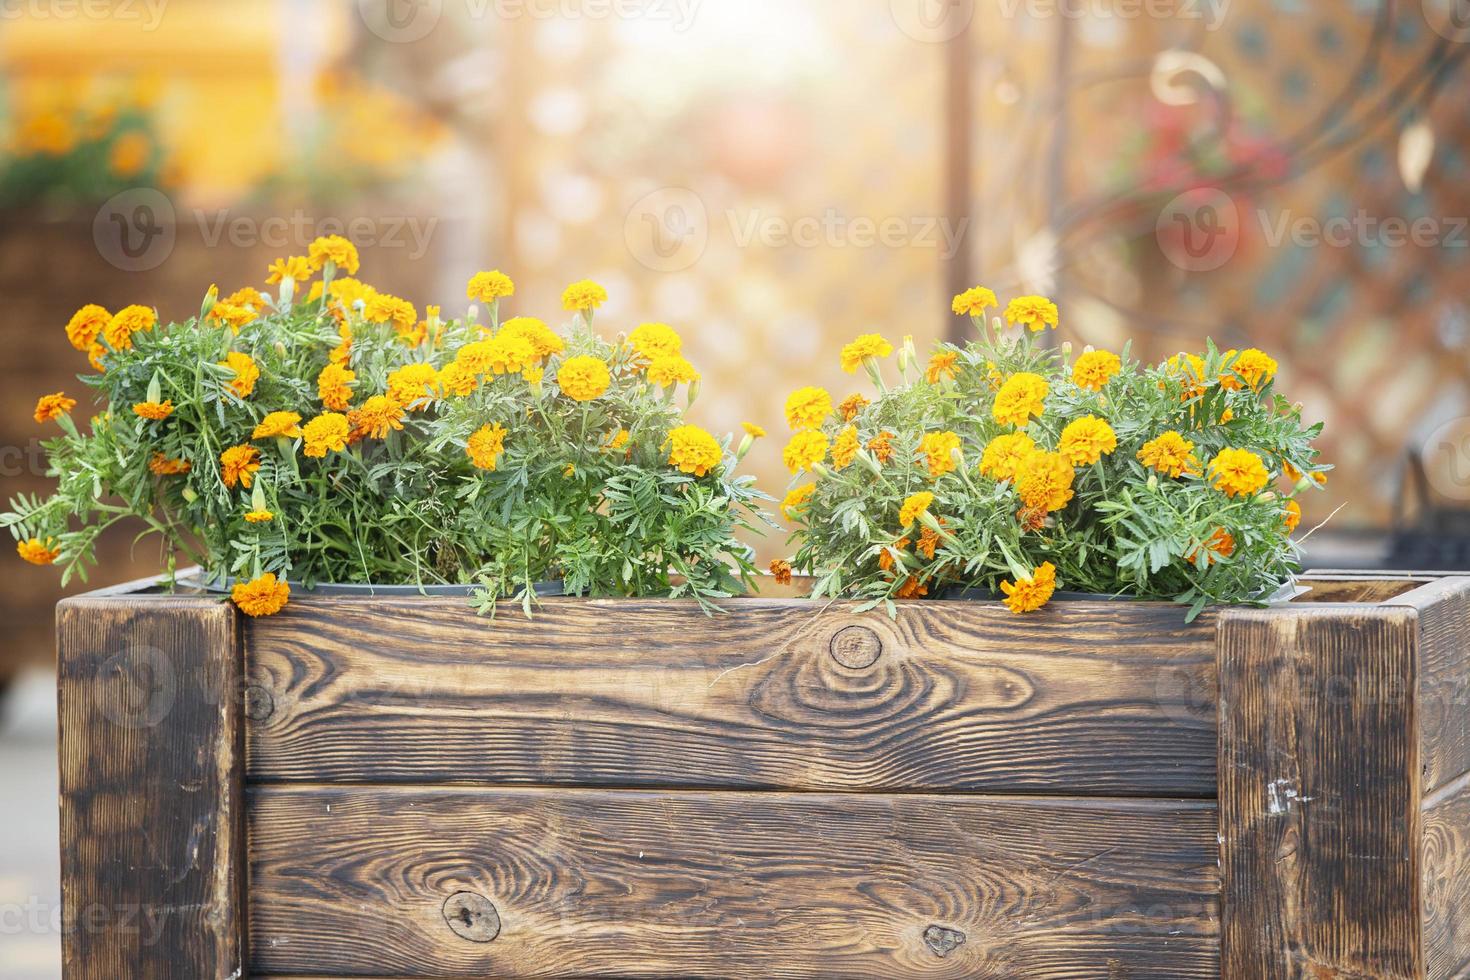 Orange Ringelblumen im hölzern Boxen. Stadt Blumen. foto